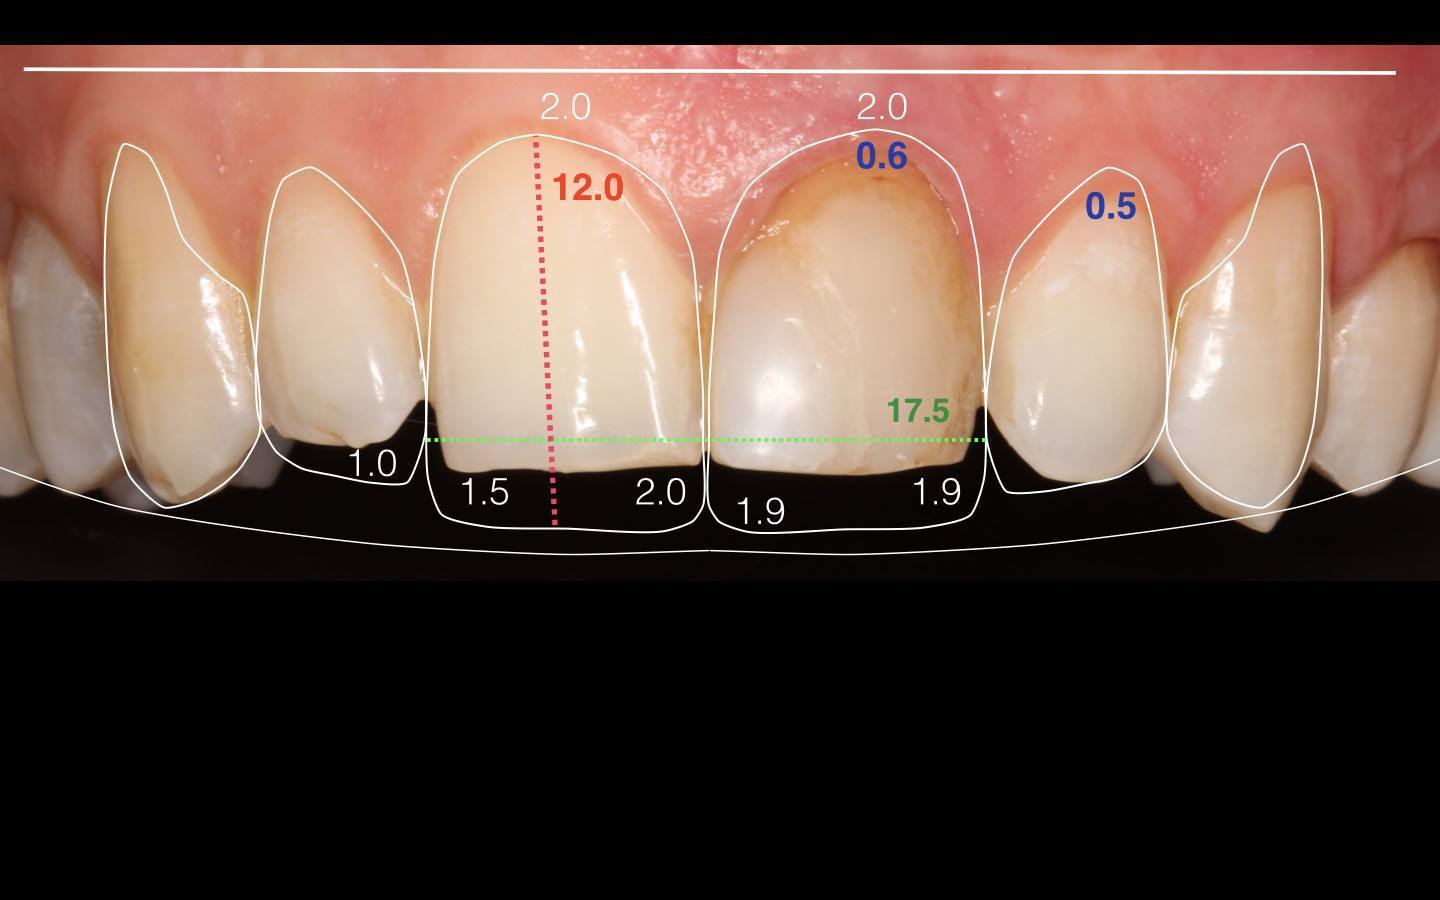 Фото: компьютерное моделирование челюсти в эстетической стоматологии помогает показать пациенту, как будет выглядеть зубной ряд